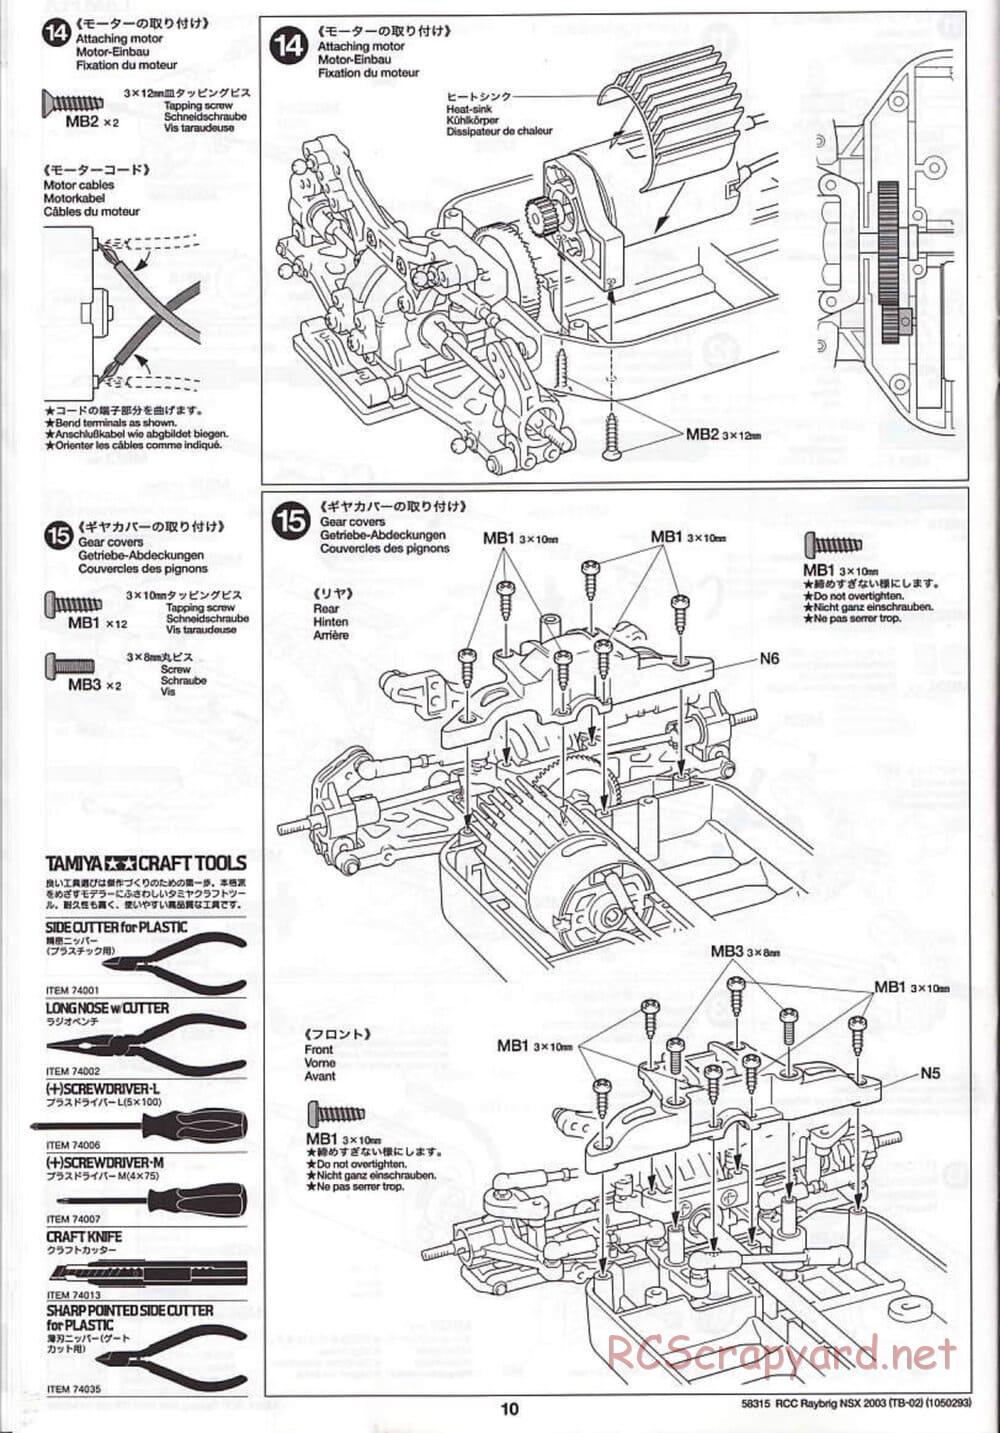 Tamiya - Raybrig NSX 2003 - TB-02 Chassis - Manual - Page 10